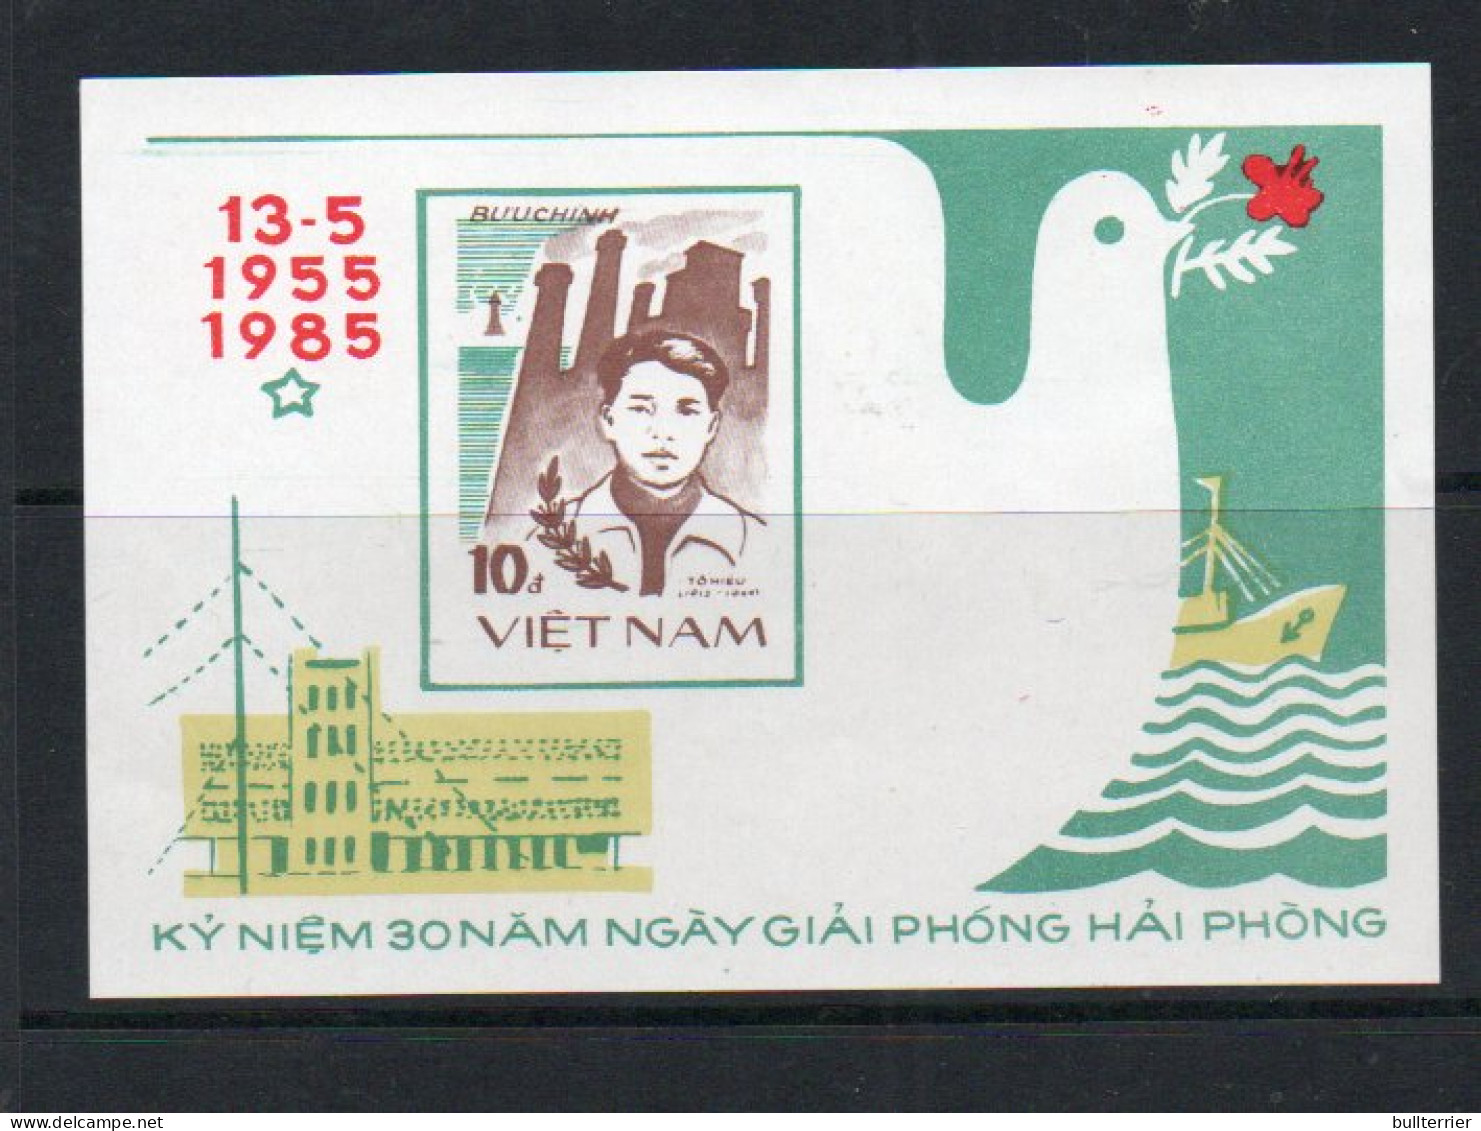 VIETNAM - 1985 - HAIPHONG  SOUVENIR SHEET  MINT NEVER HINGED - Vietnam